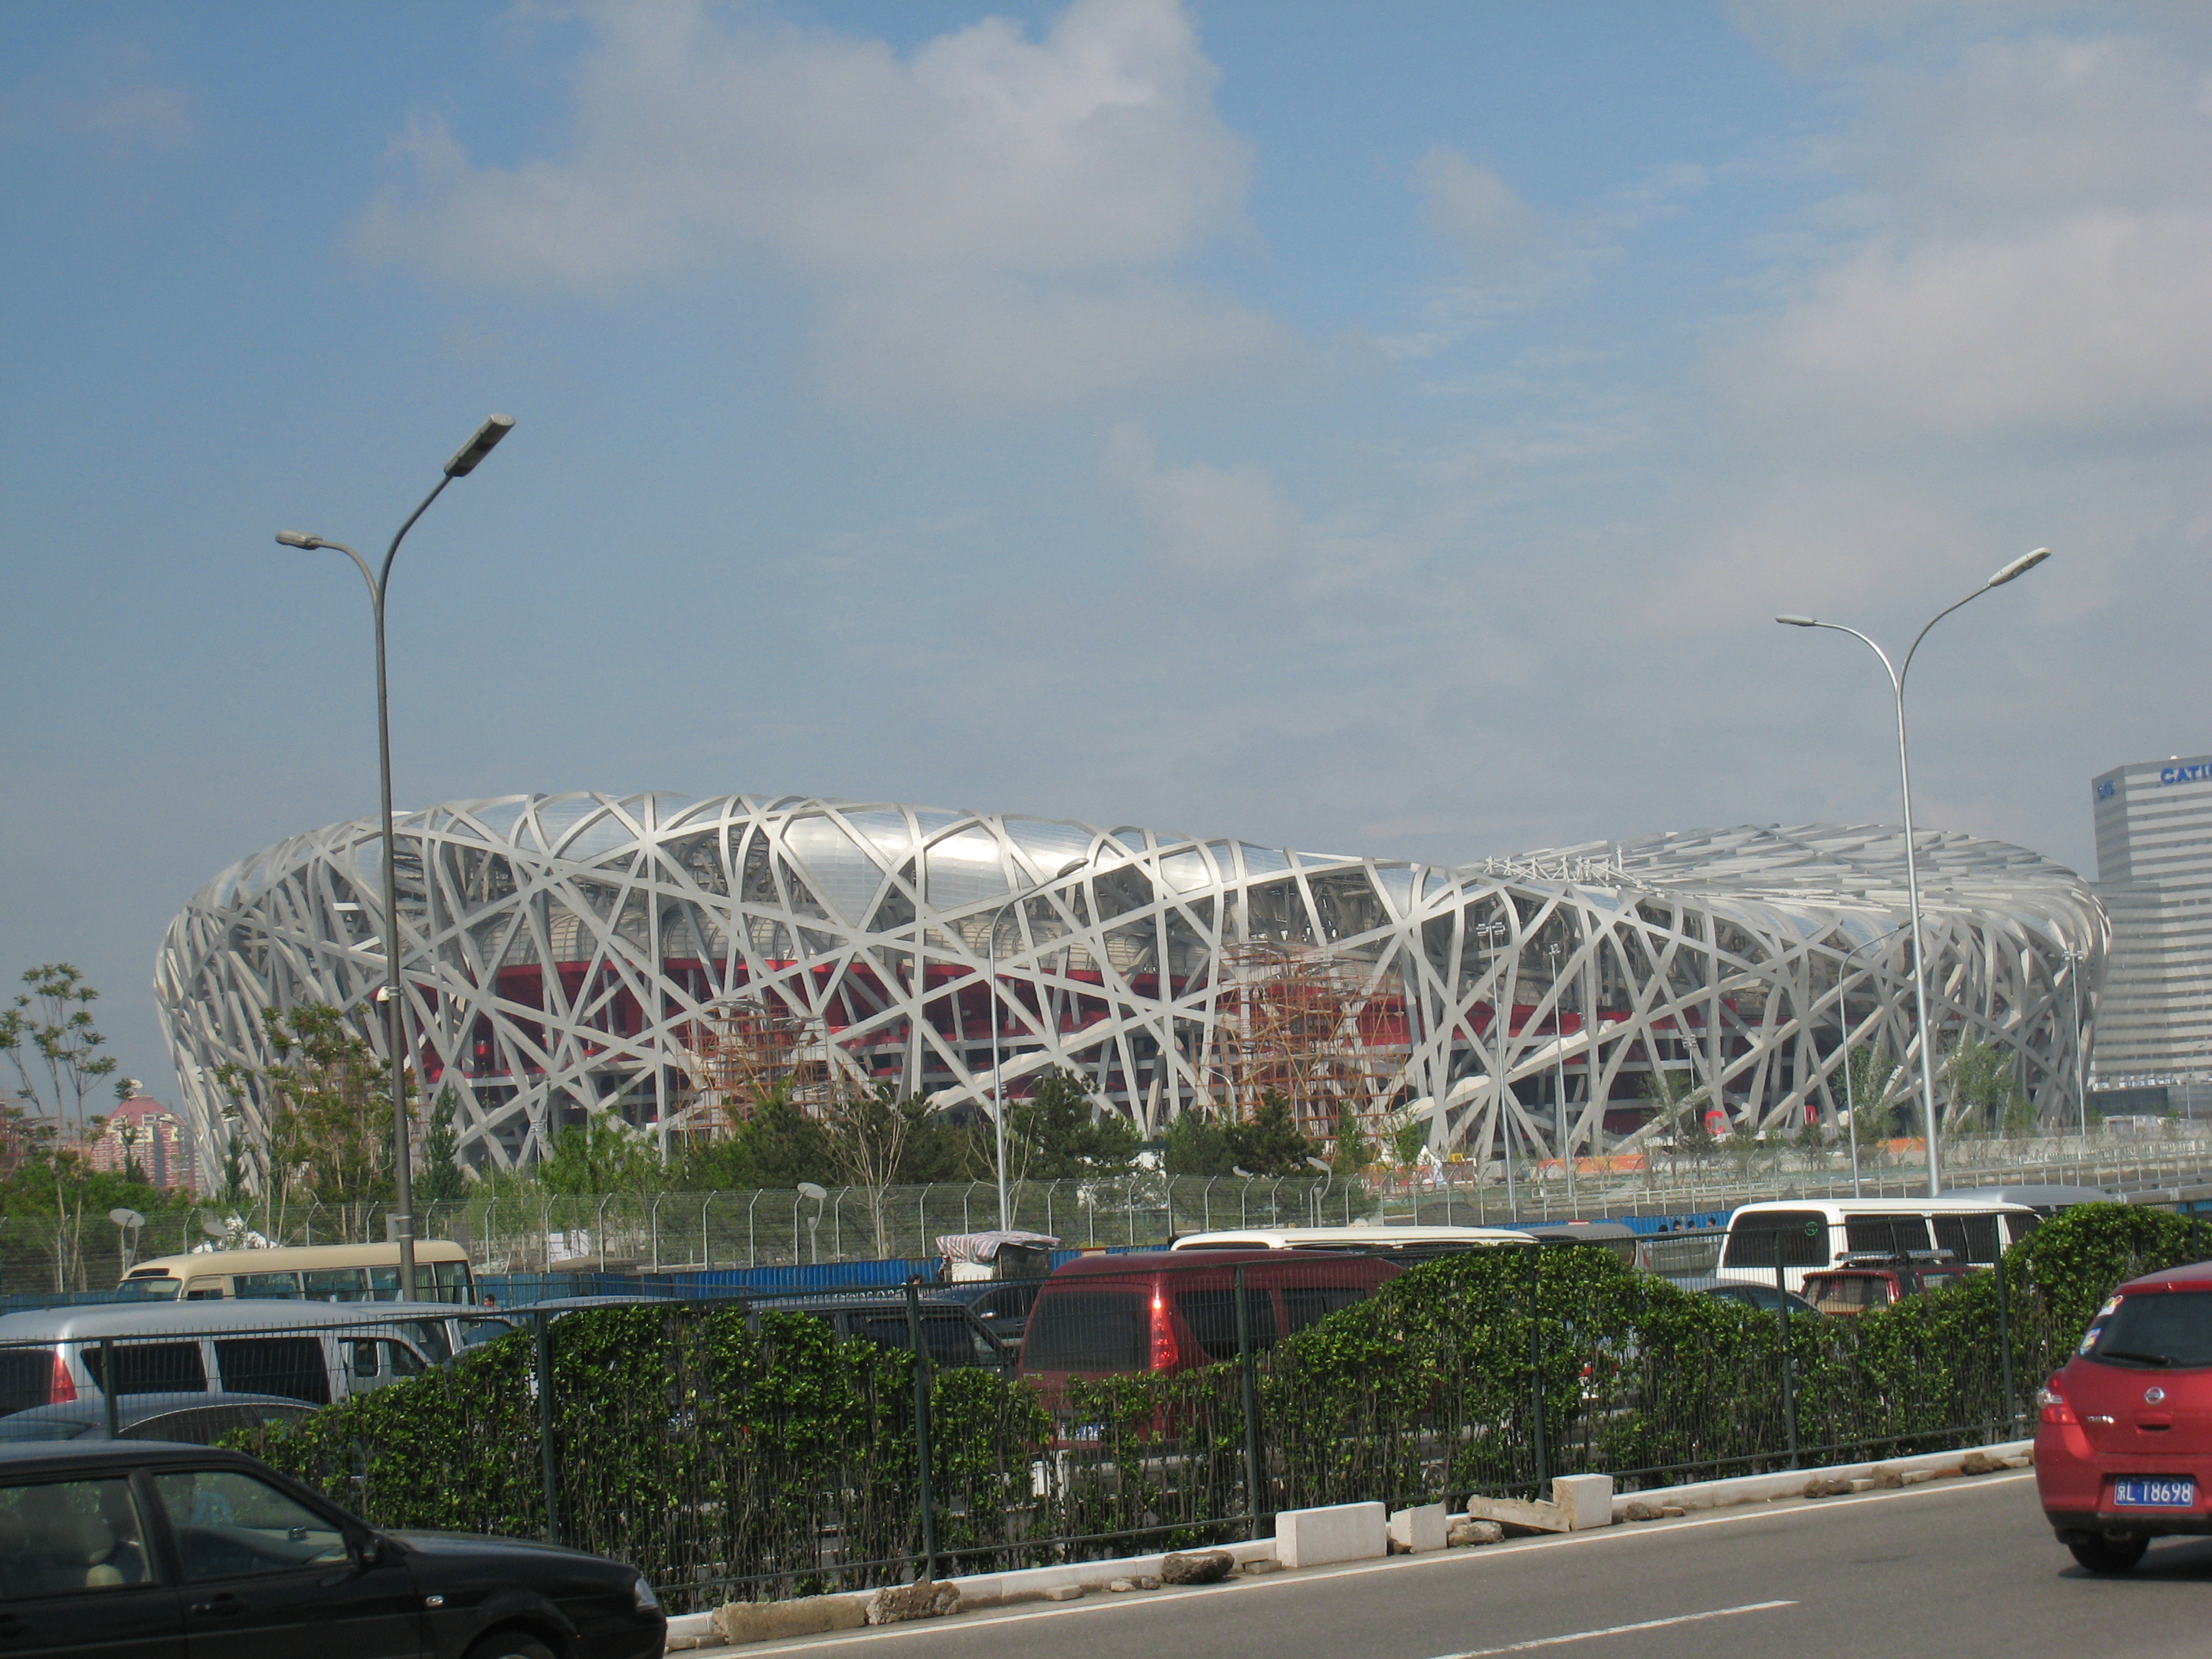 byggnaden pekings nationalstadion som ser ut som ett fågelbo.